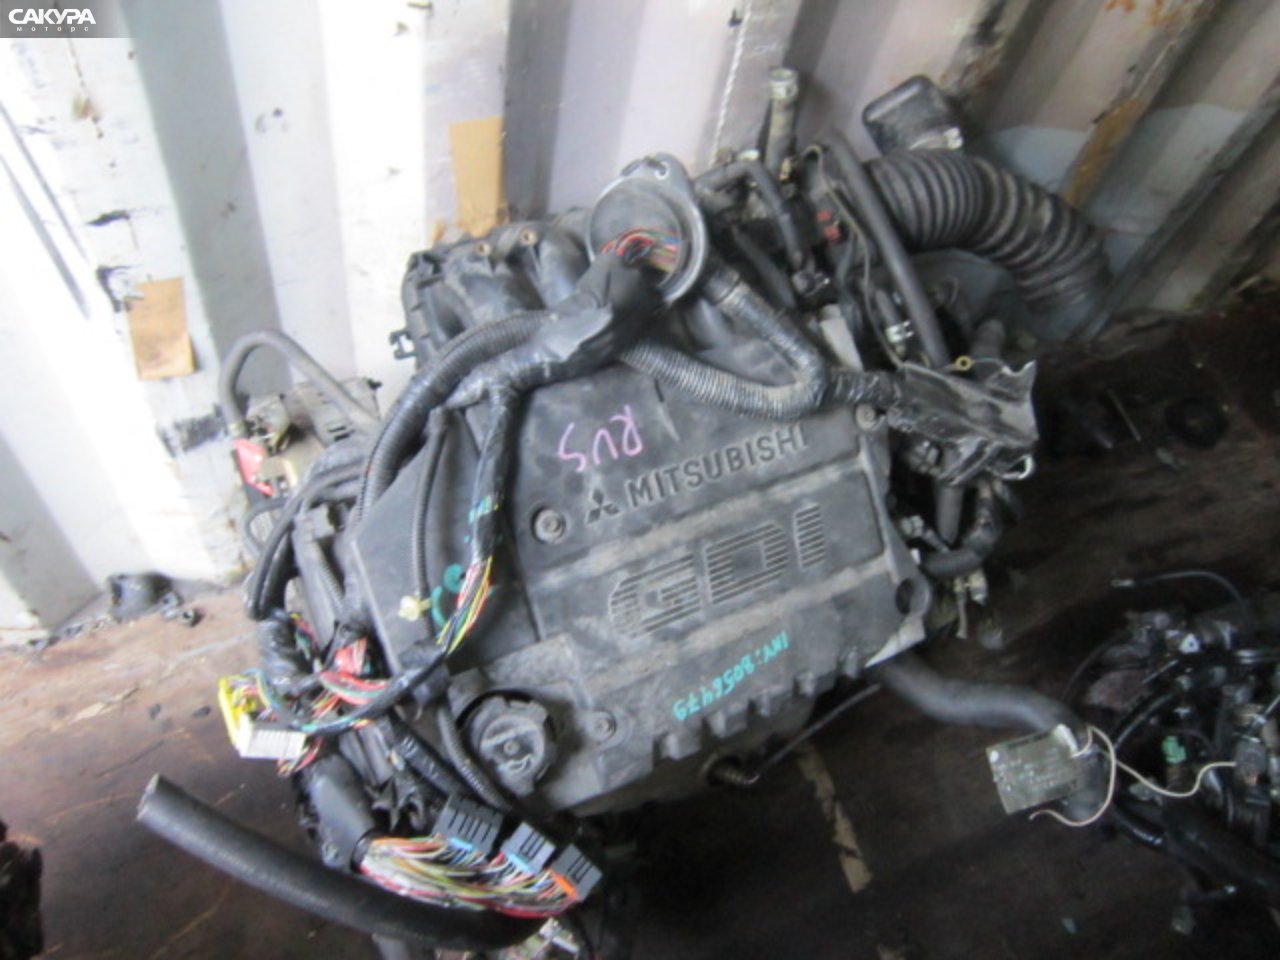 Двигатель Mitsubishi Dion CR6W 4G94: купить в Сакура Абакан.